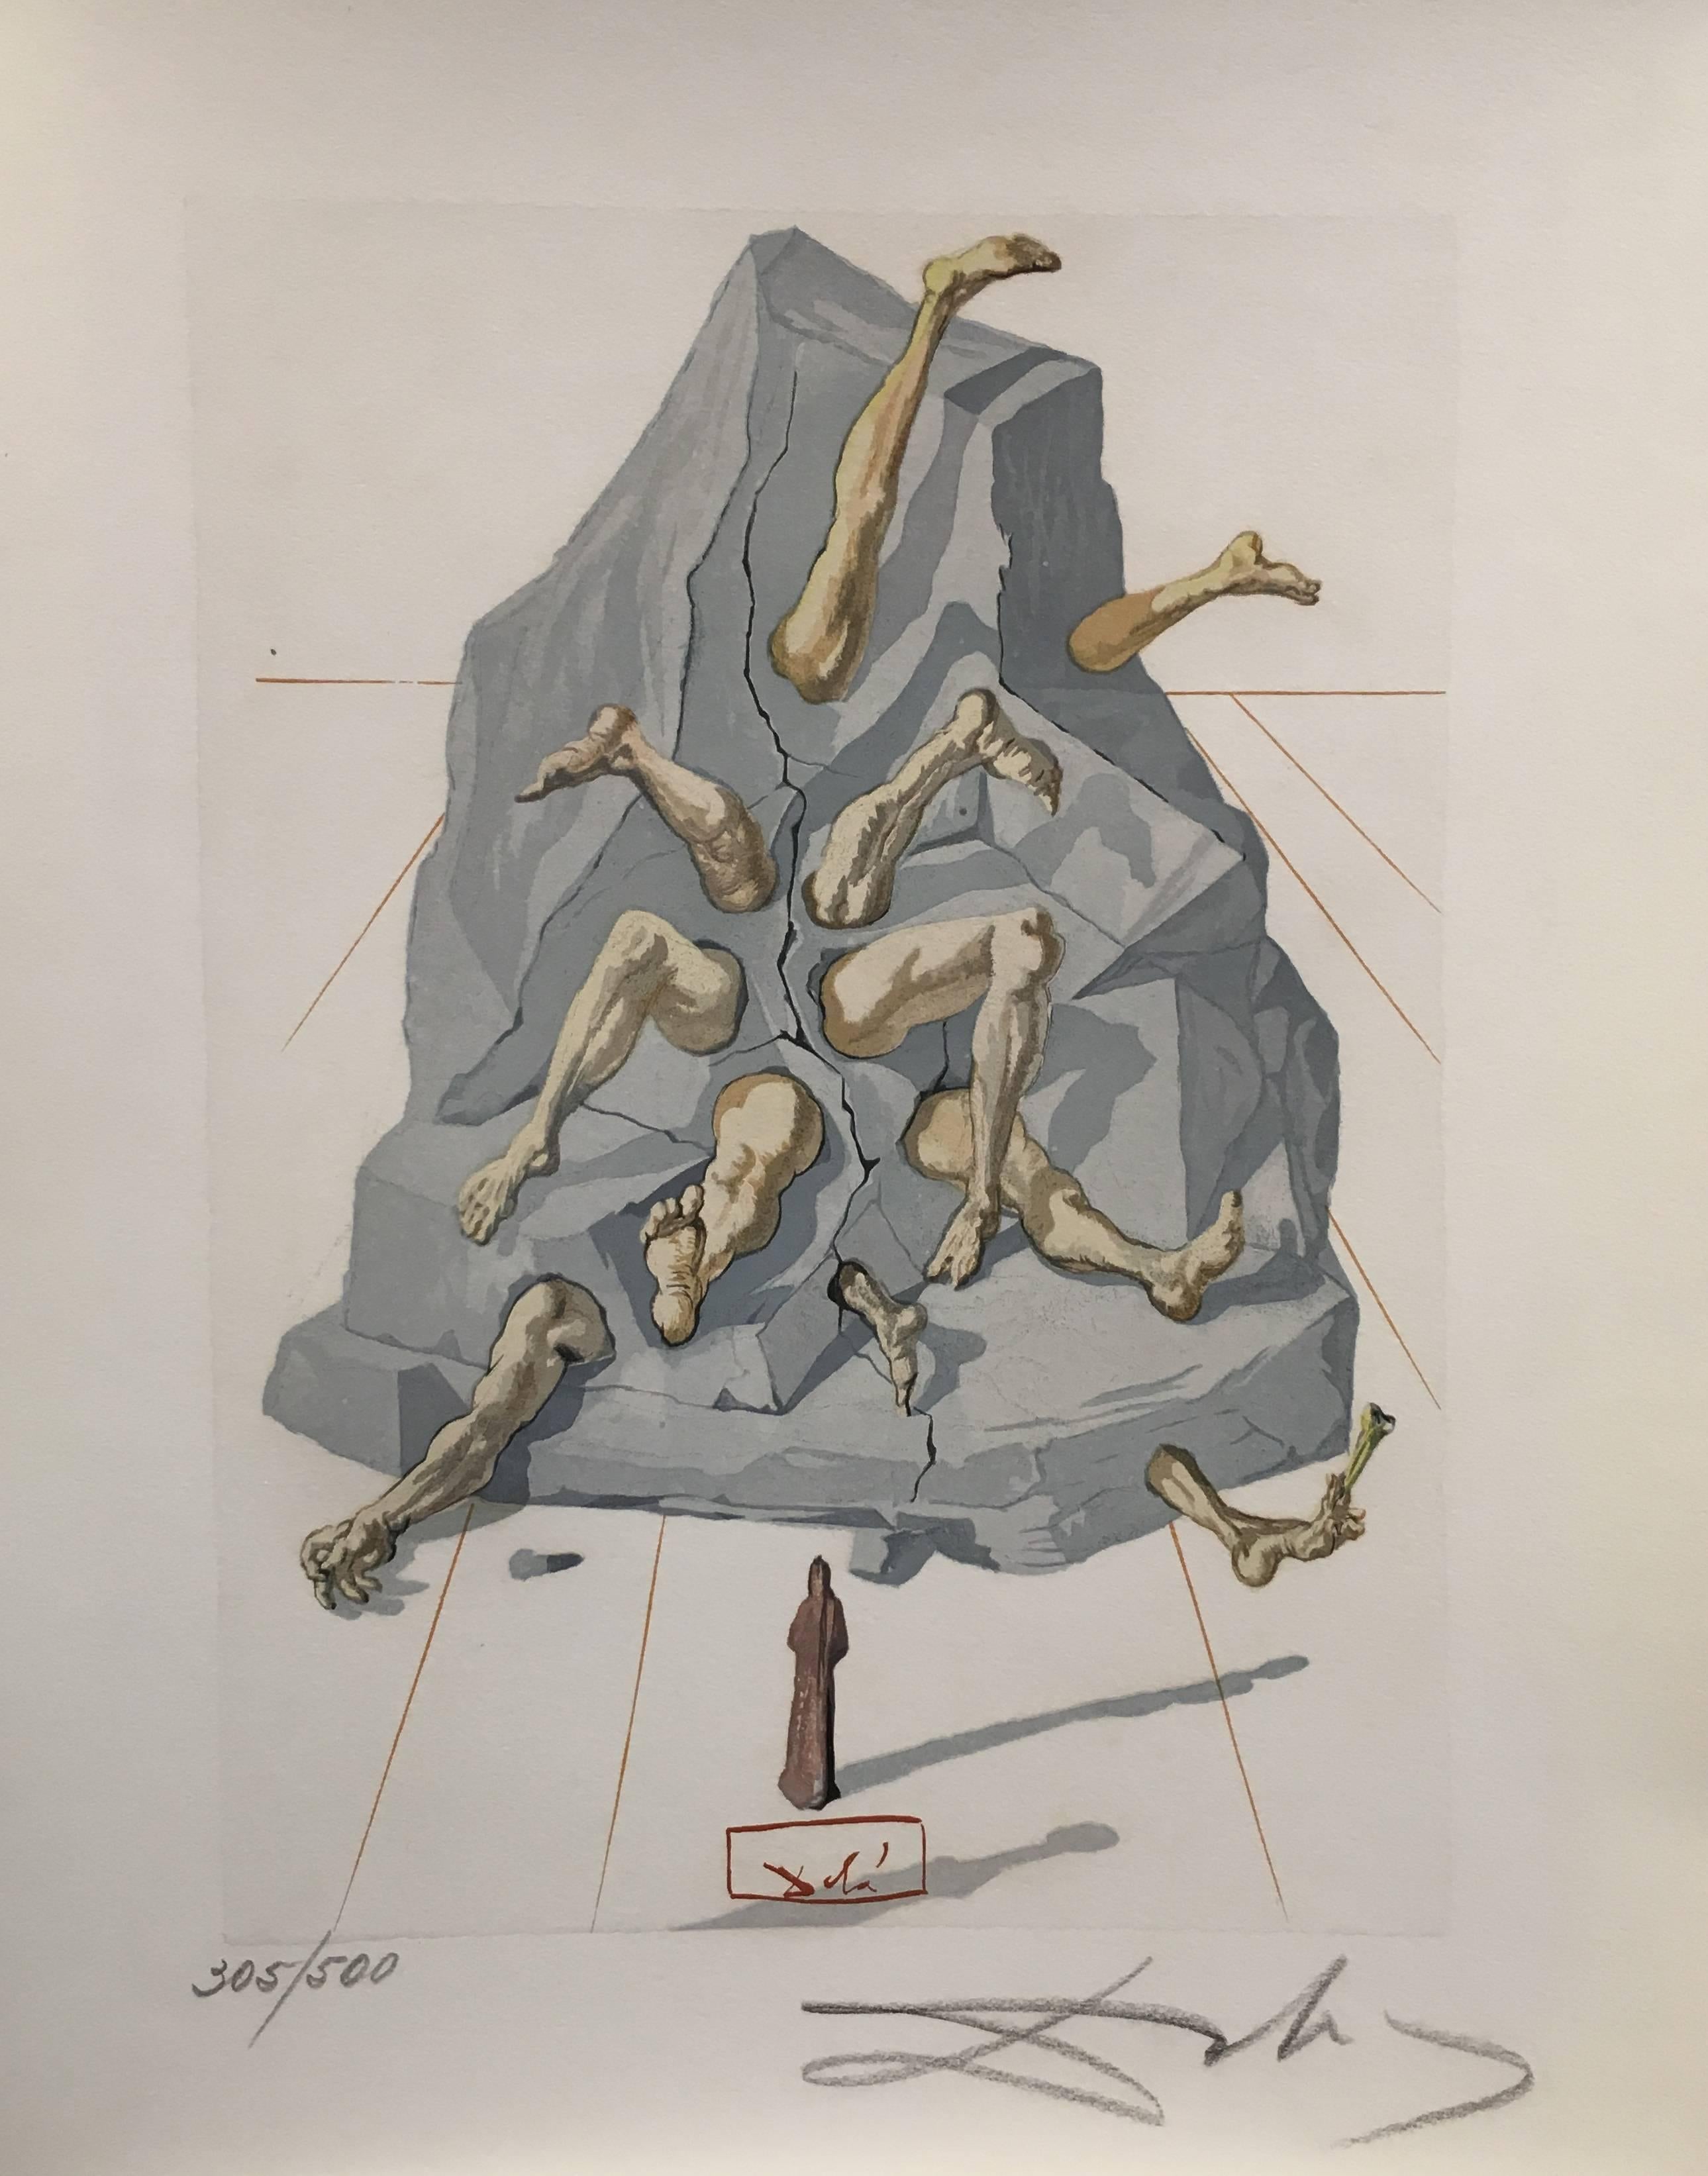 LA VIDA ES SUEÑO - Print by Salvador Dalí